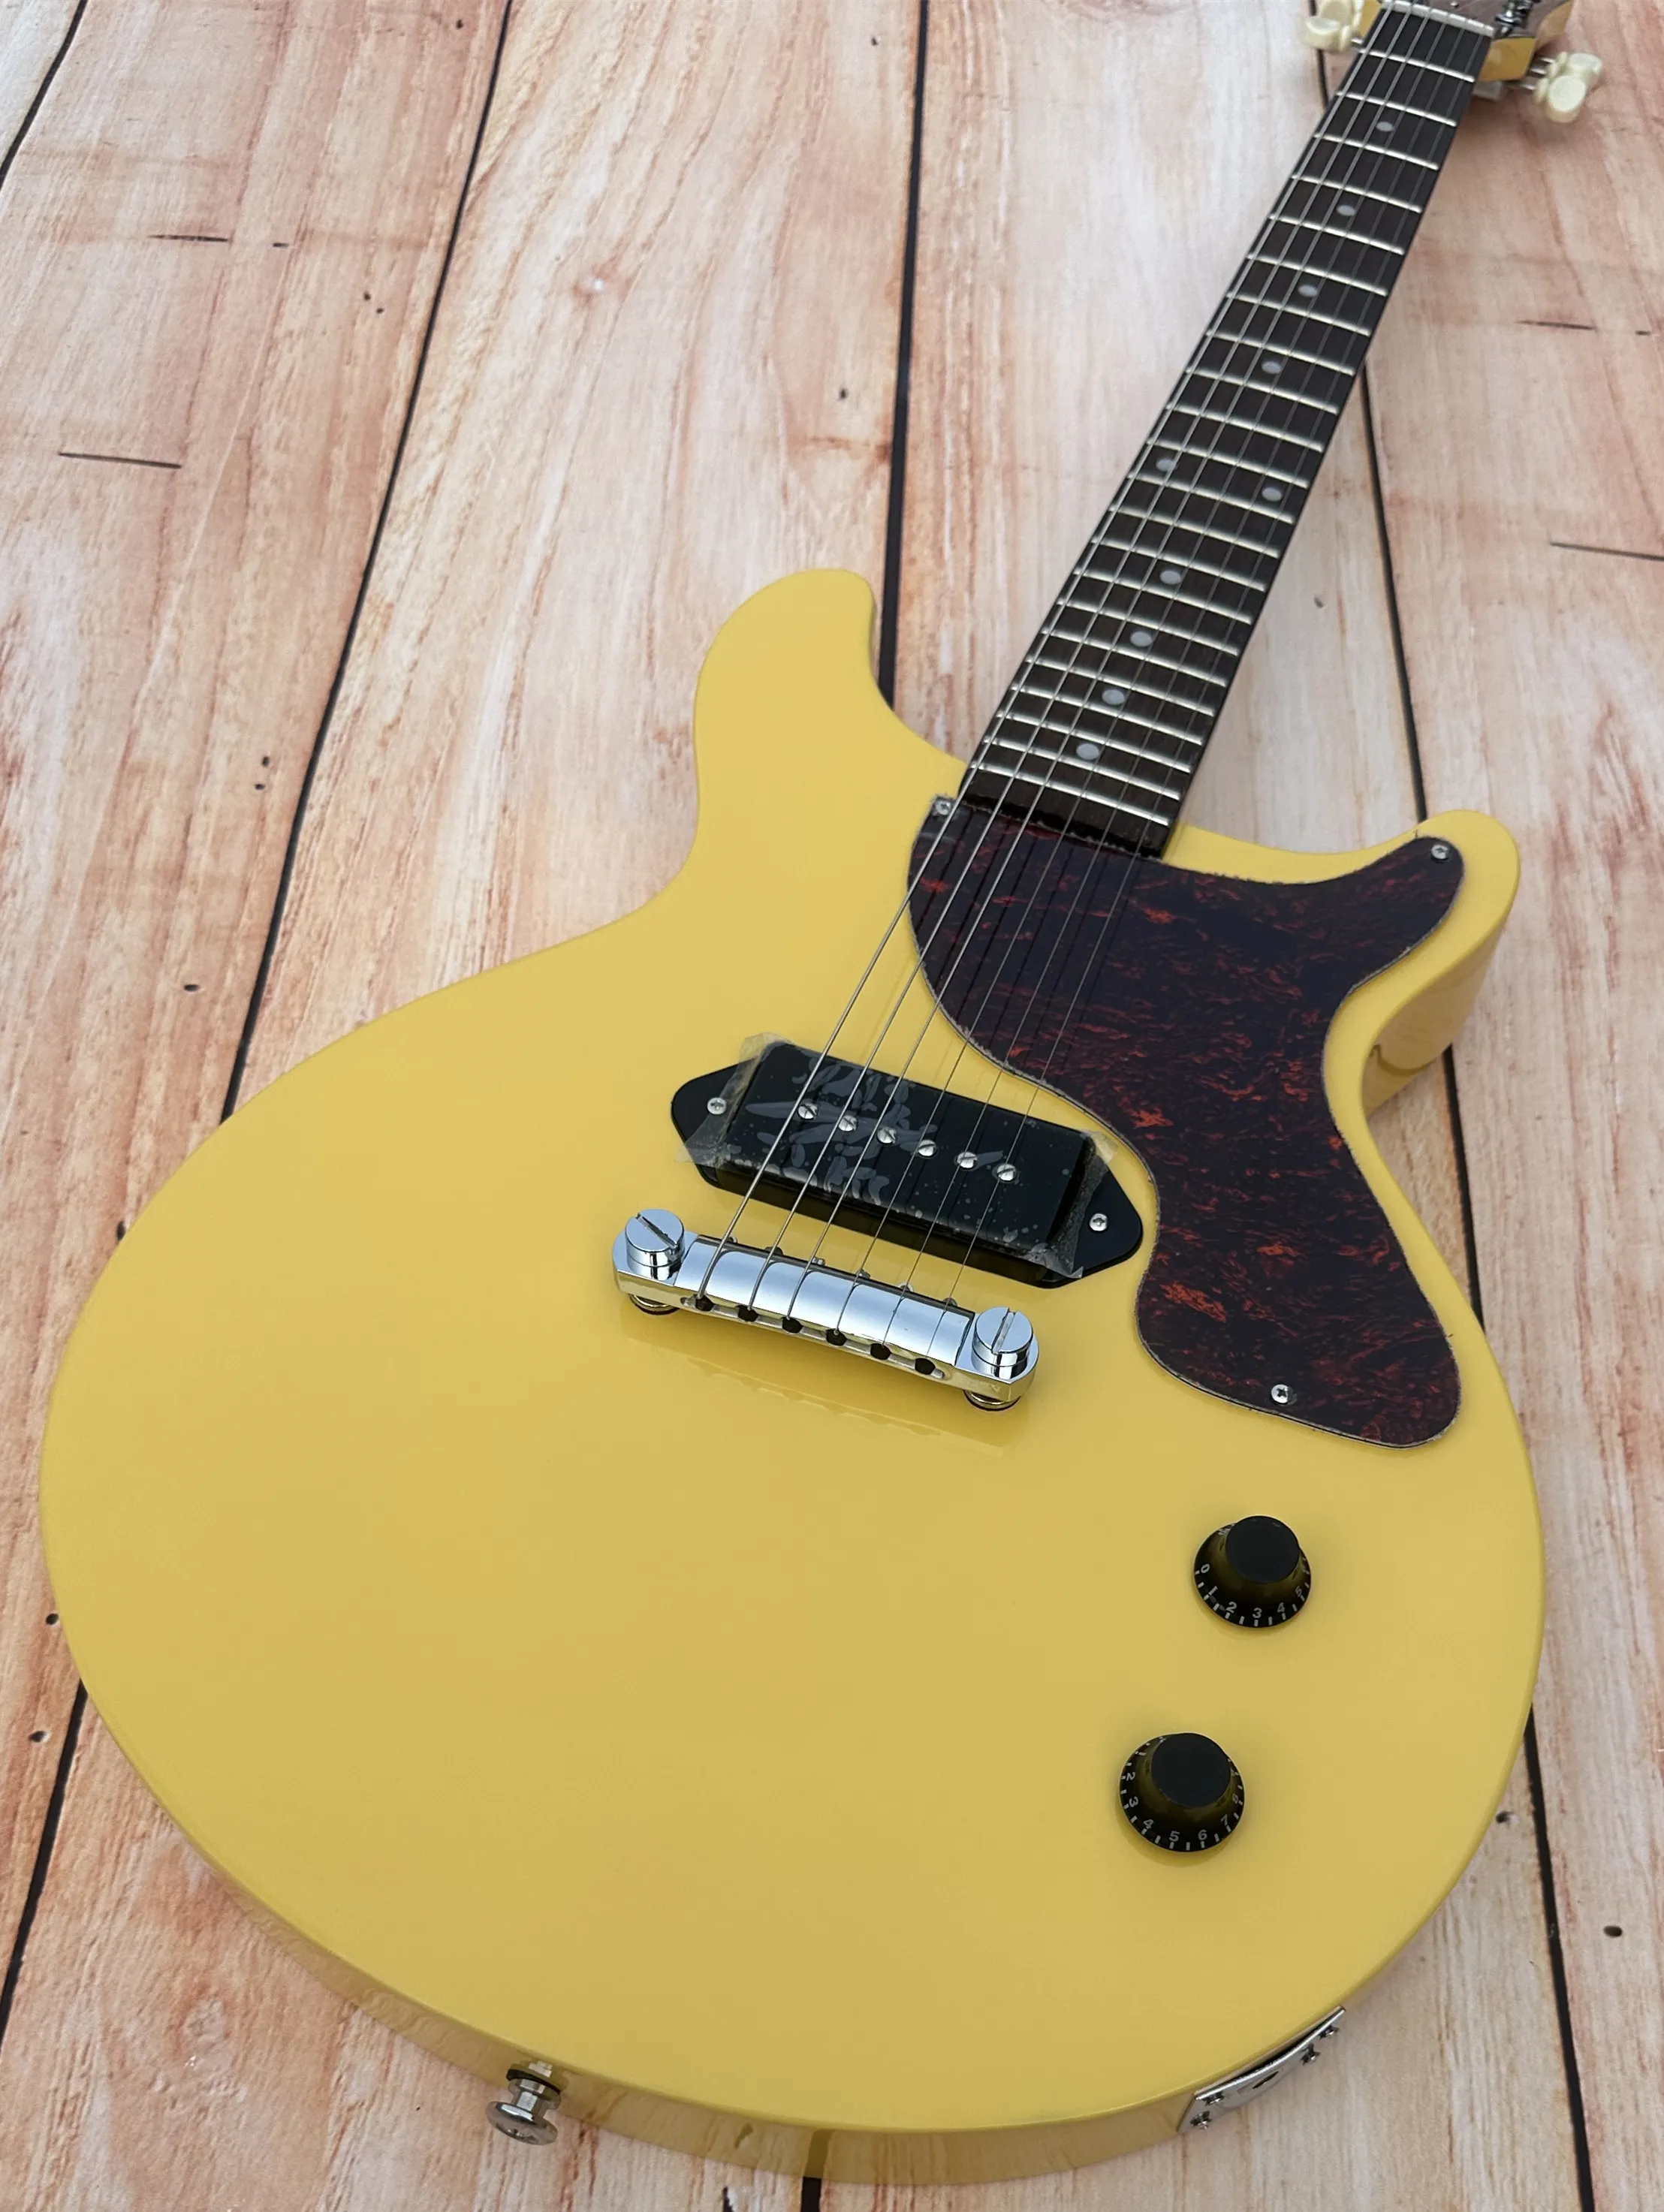 Standardowa gitara elektryczna, żółta, kremowa żółta, jasna, kremowa biała tuner retro, dostępny, Błyskawica bezpłatna wysyłka